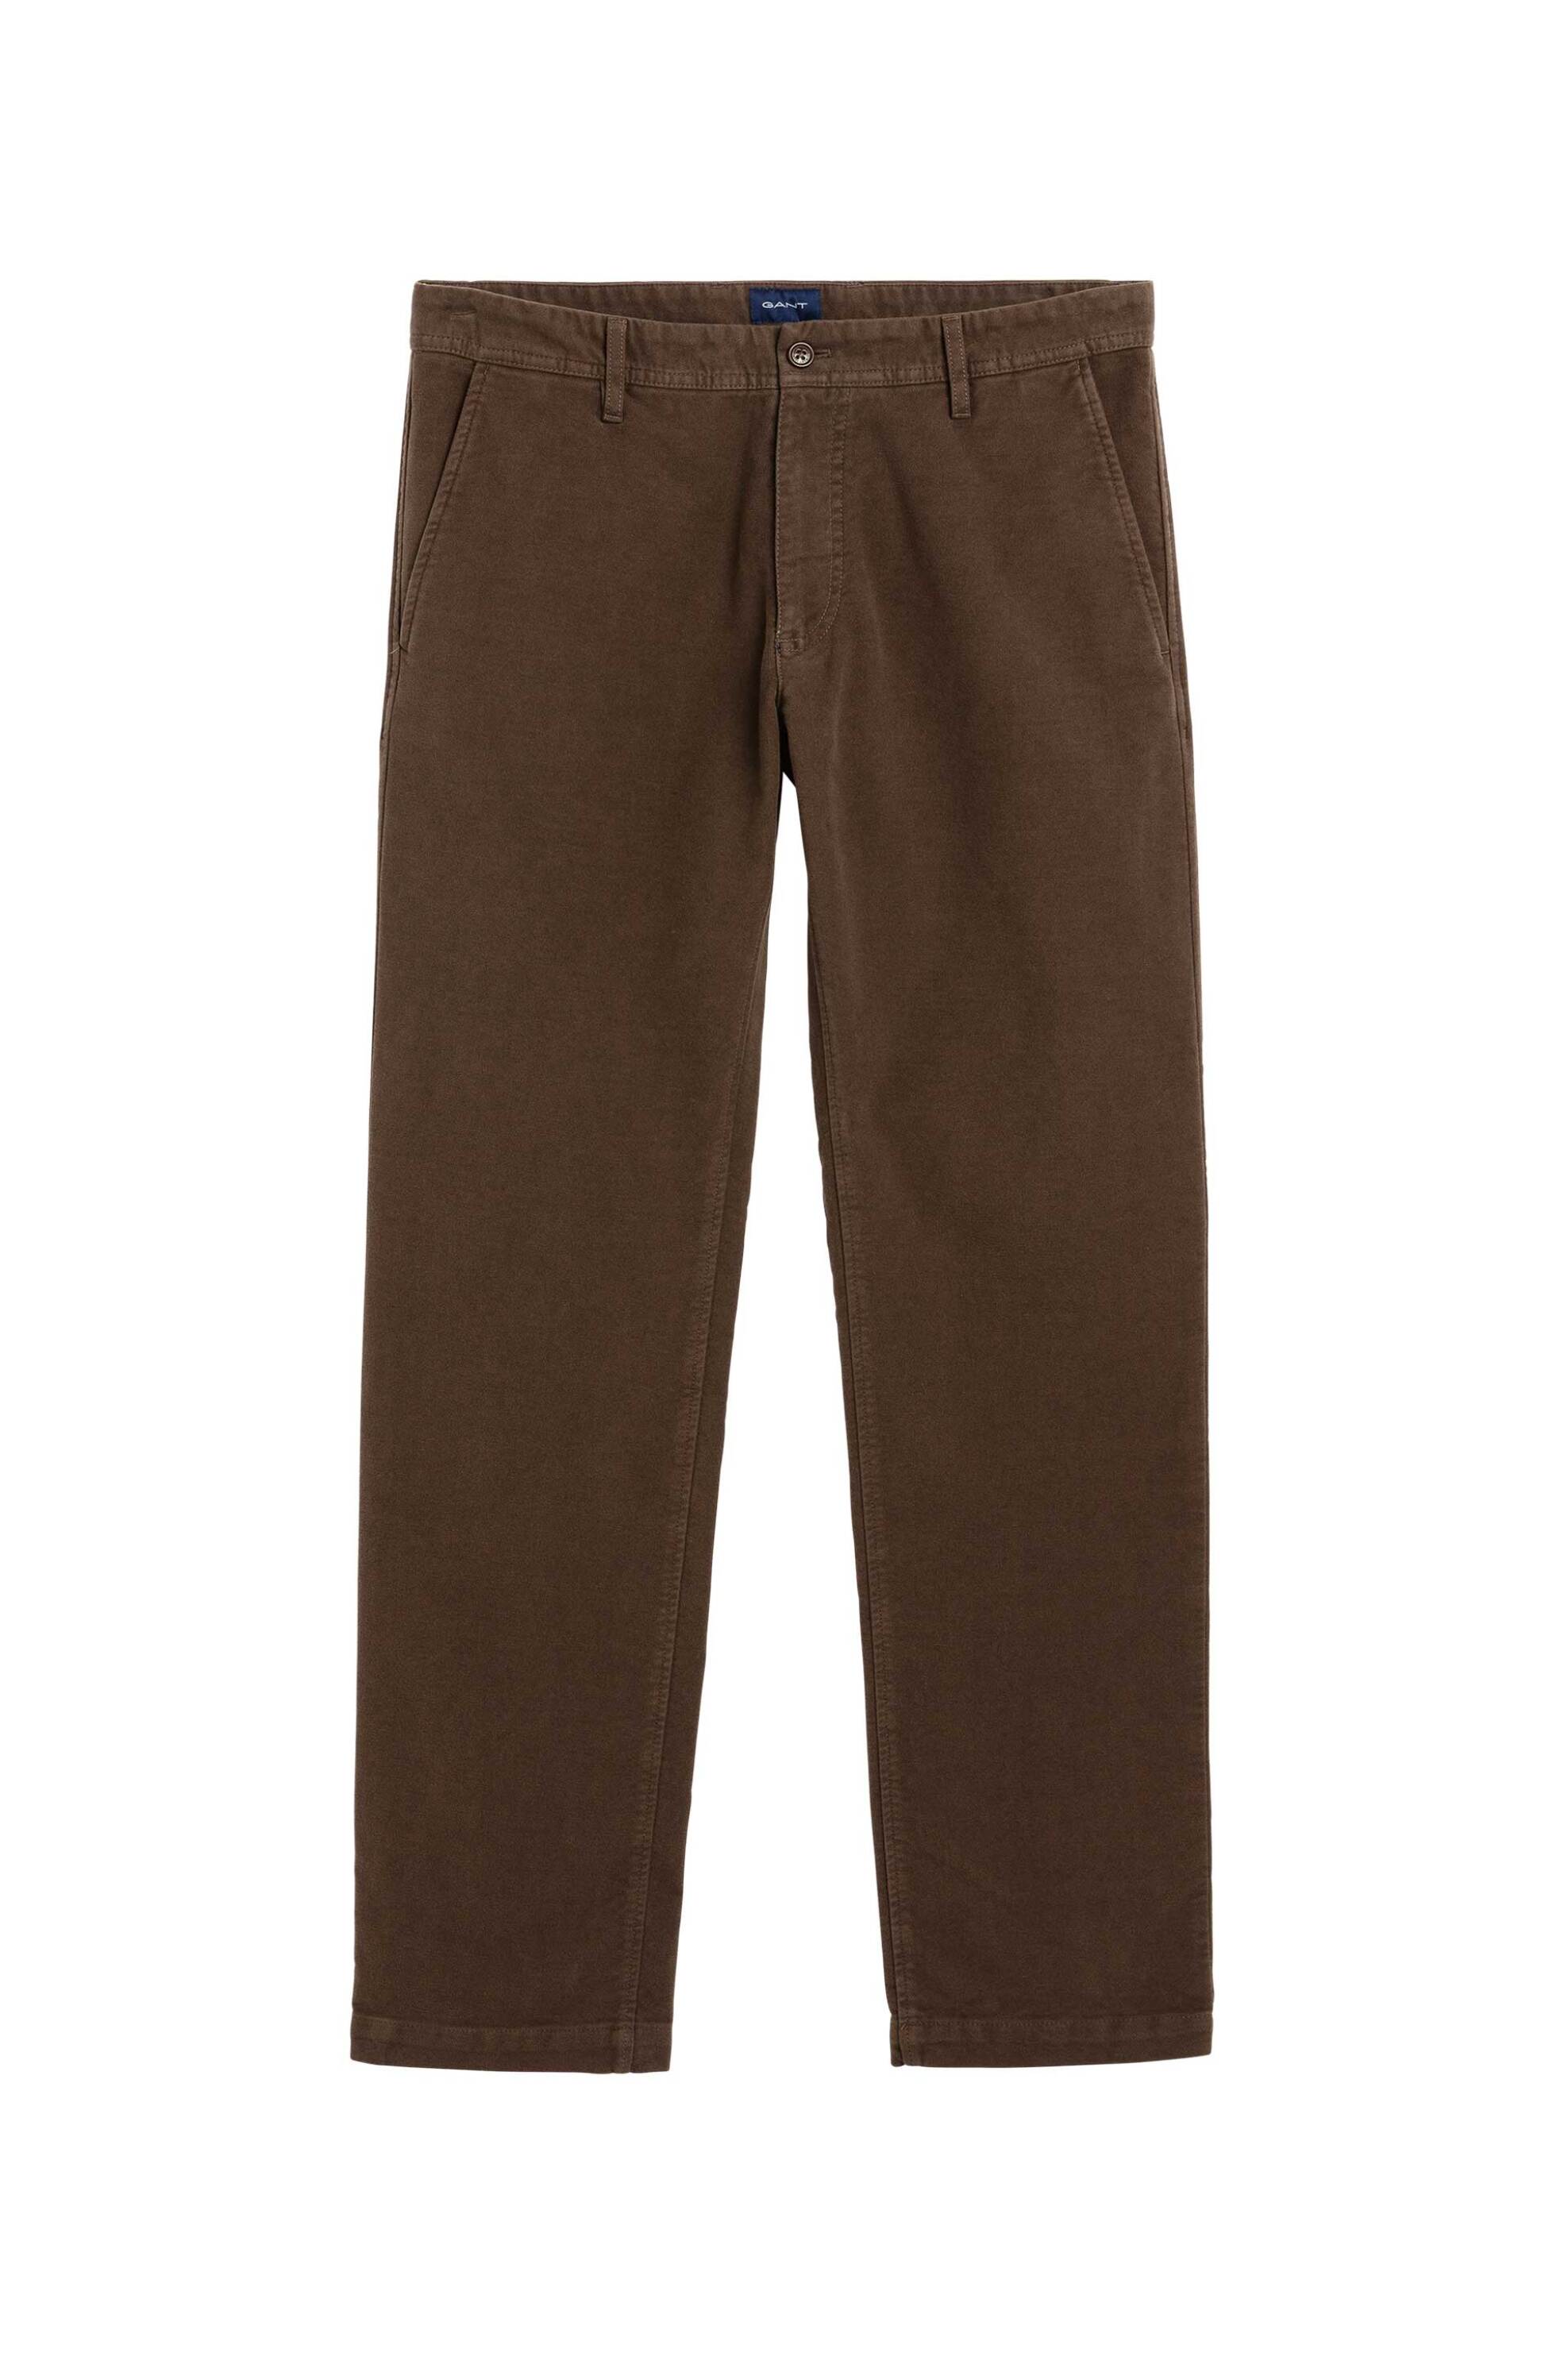 Ανδρική Μόδα > Ανδρικά Ρούχα > Ανδρικά Παντελόνια > Ανδρικά Παντελόνια Chinos Gant ανδρικό chino παντελόνι μονόχρωμο (34L) - 1500019 Καφέ